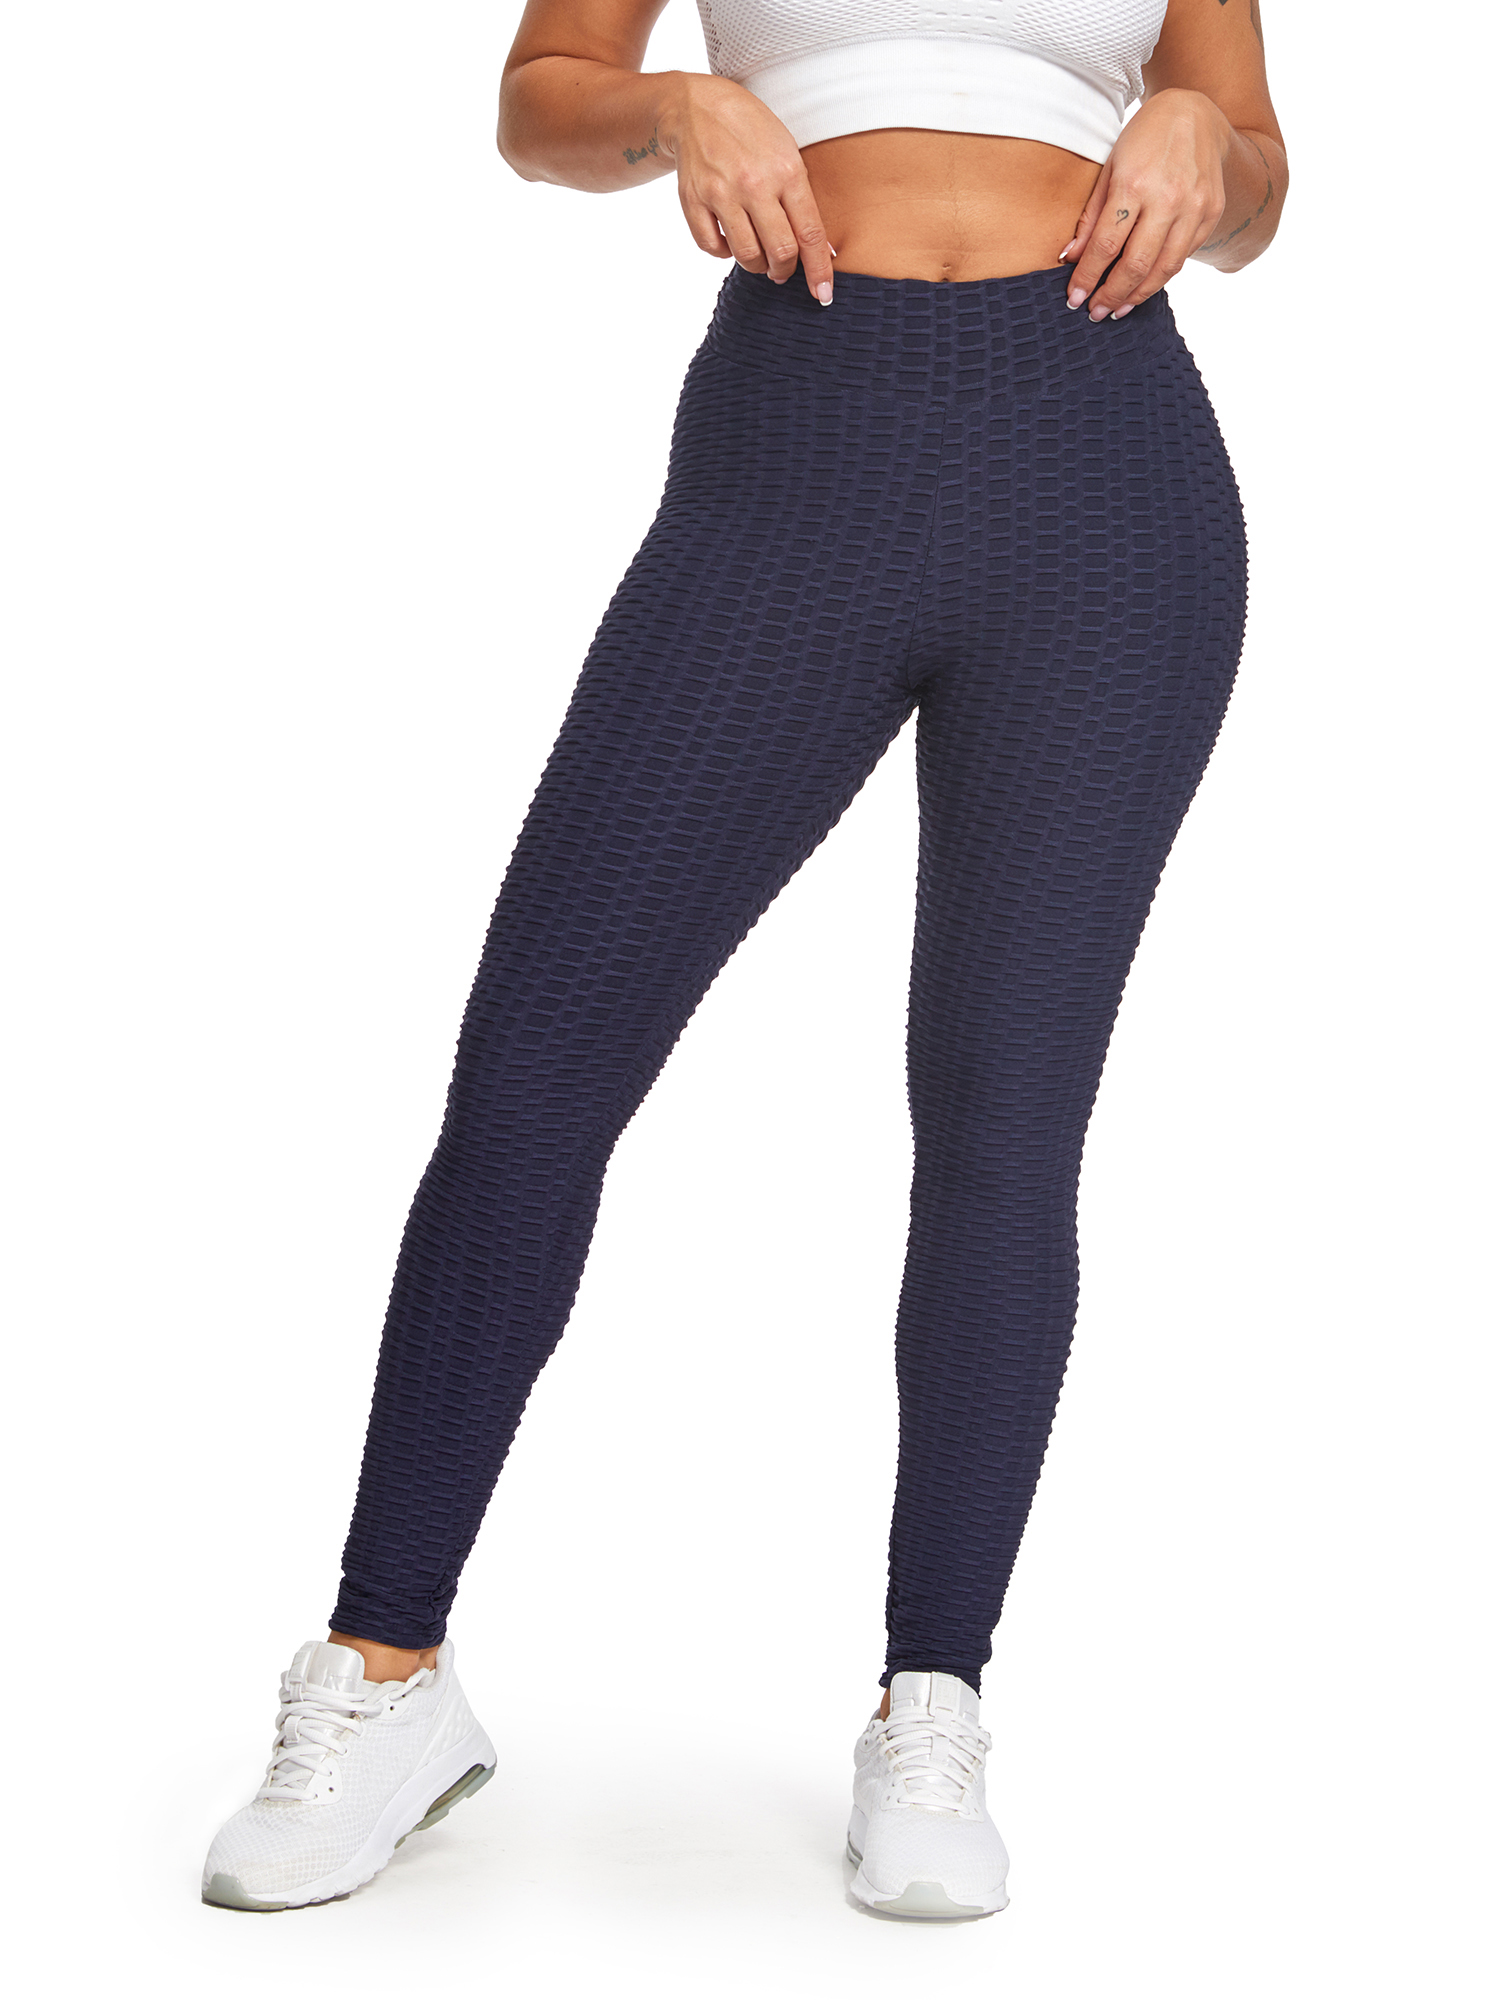 SEASUM Women's High Waist Yoga Leggings Tummy Control Butt Lift Tights  Textured Workout Running Pants Navy Blue L 